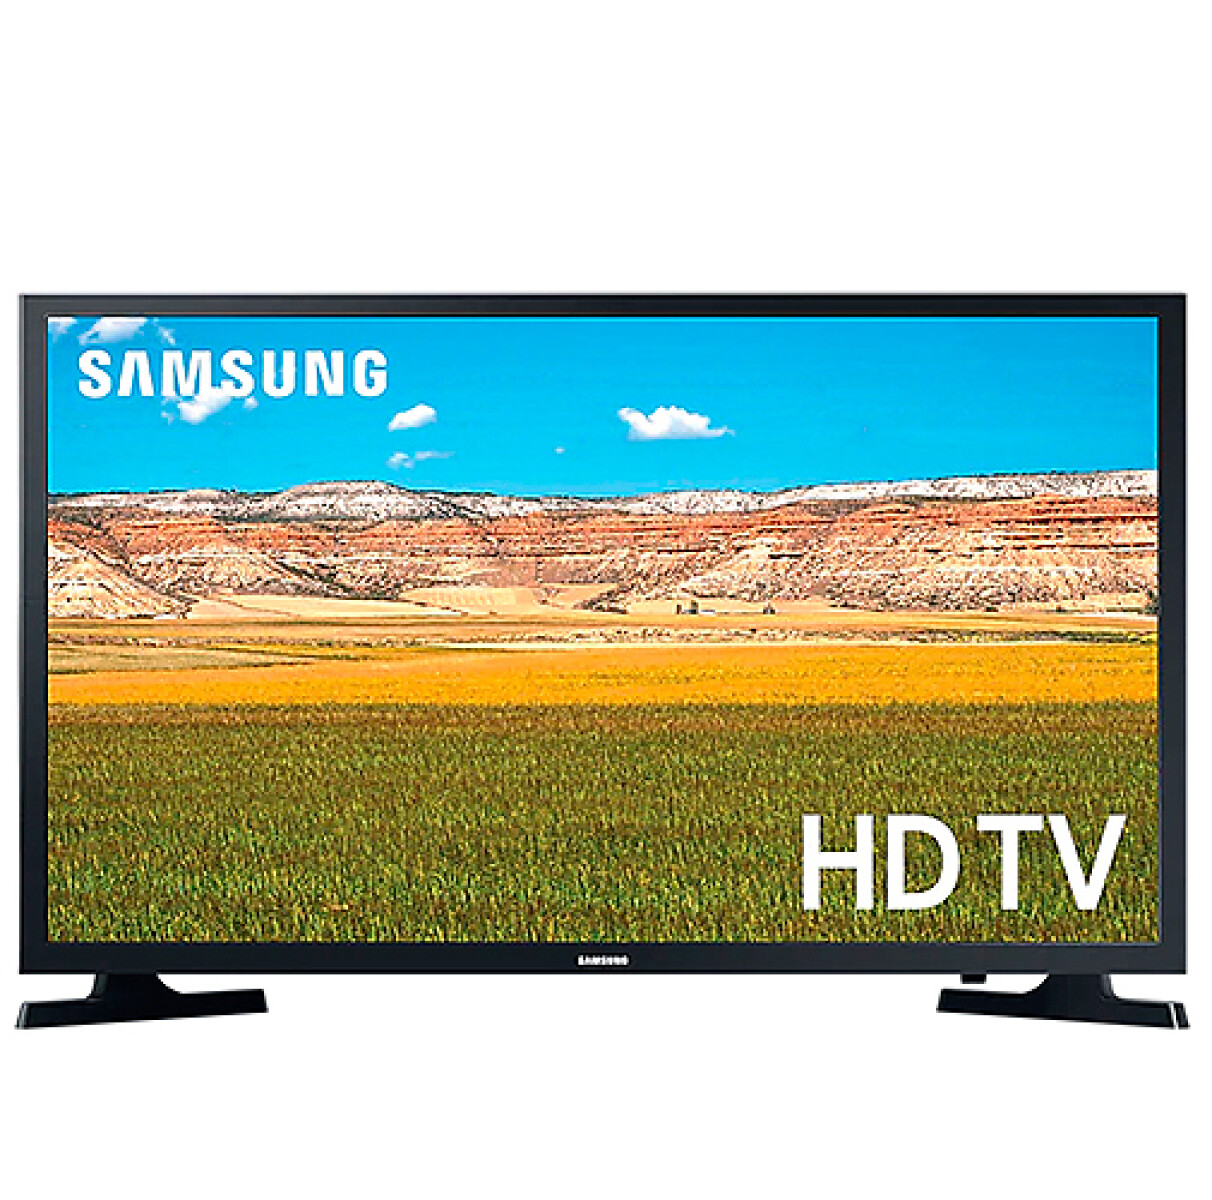 TV SAMSUNG 32” UN32T4310 SMART HD - Sin color 